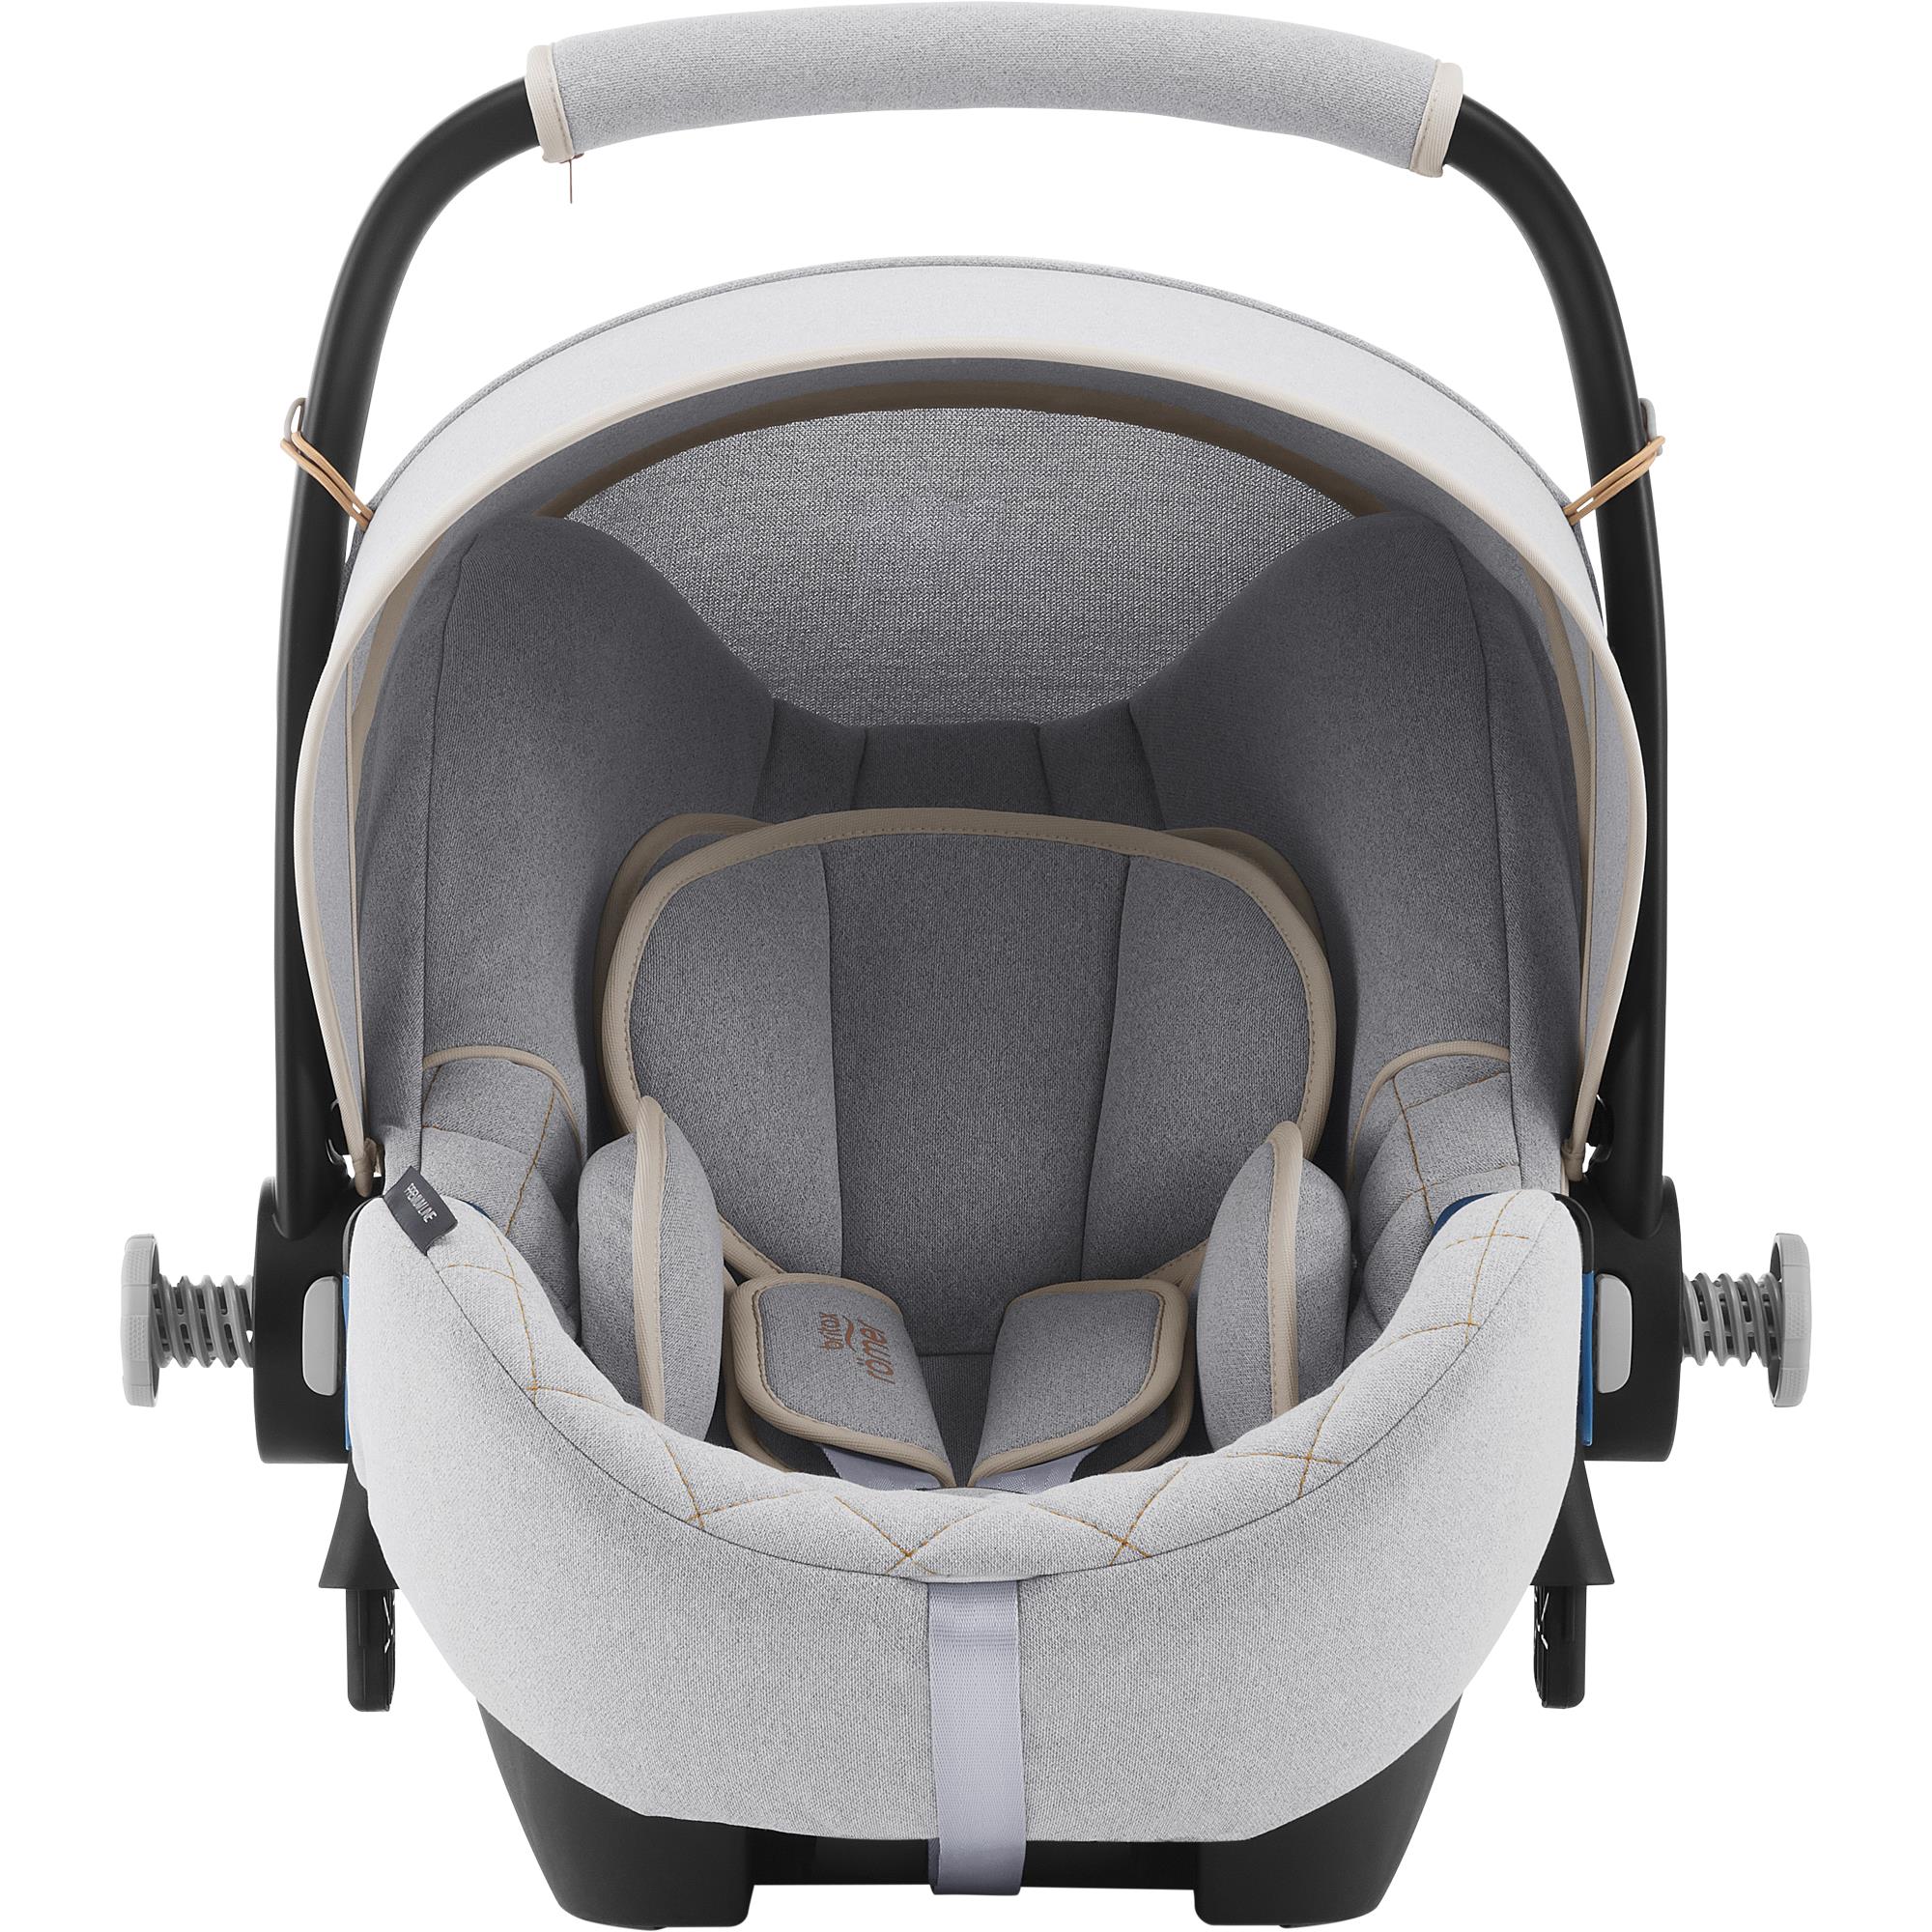 ROMER Baby-Safe 2 i-Size Nordic Grey 2023